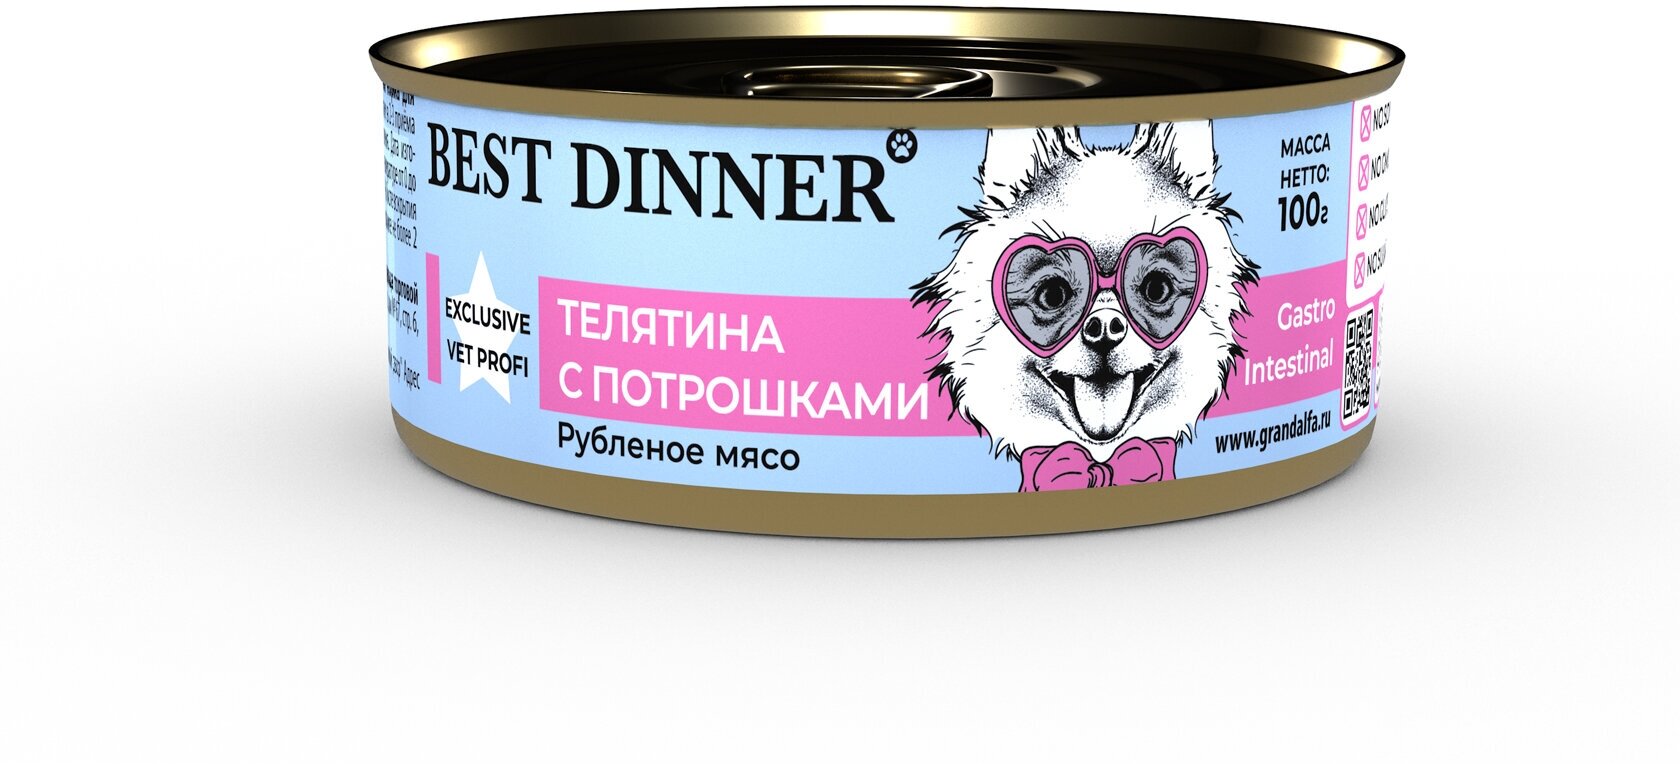 Best Dinner Vet Profi Gastro Intestinal Exclusive 24шт по 100г телятина с потрошками консервы для собак